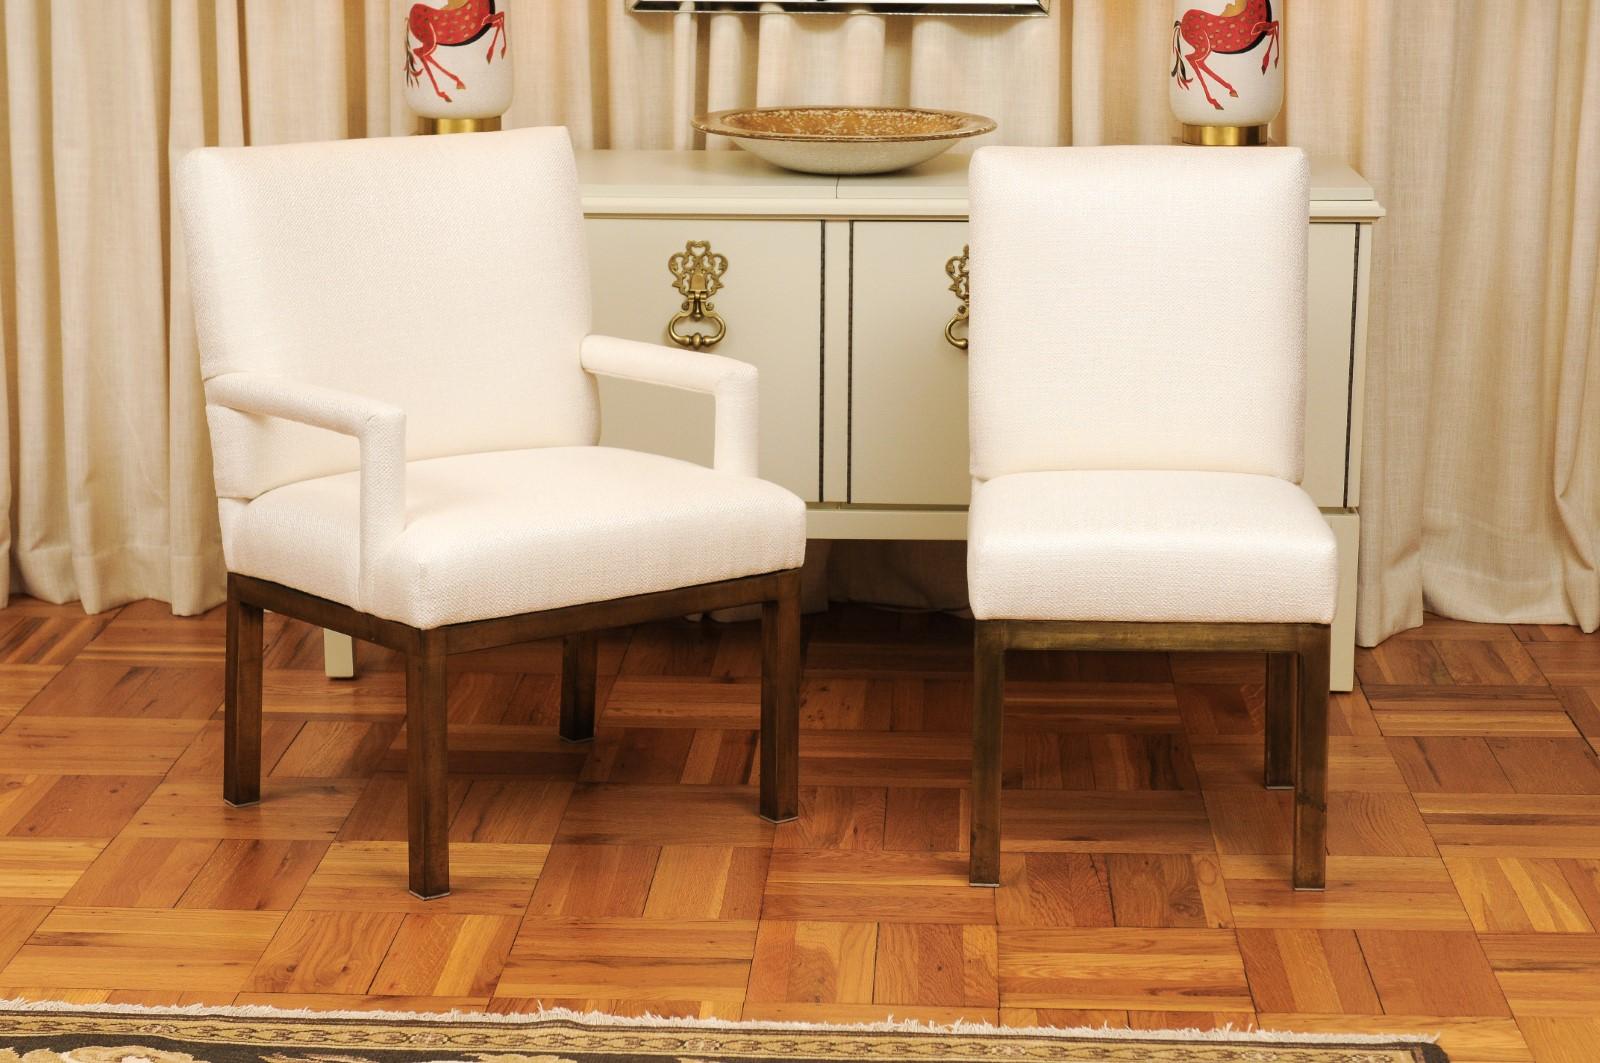 Ces magnifiques chaises de salle à manger sont expédiées telles qu'elles ont été photographiées par des professionnels et décrites dans le texte de l'annonce, entièrement prêtes à être installées. Ce grand ensemble est unique sur le marché. Un